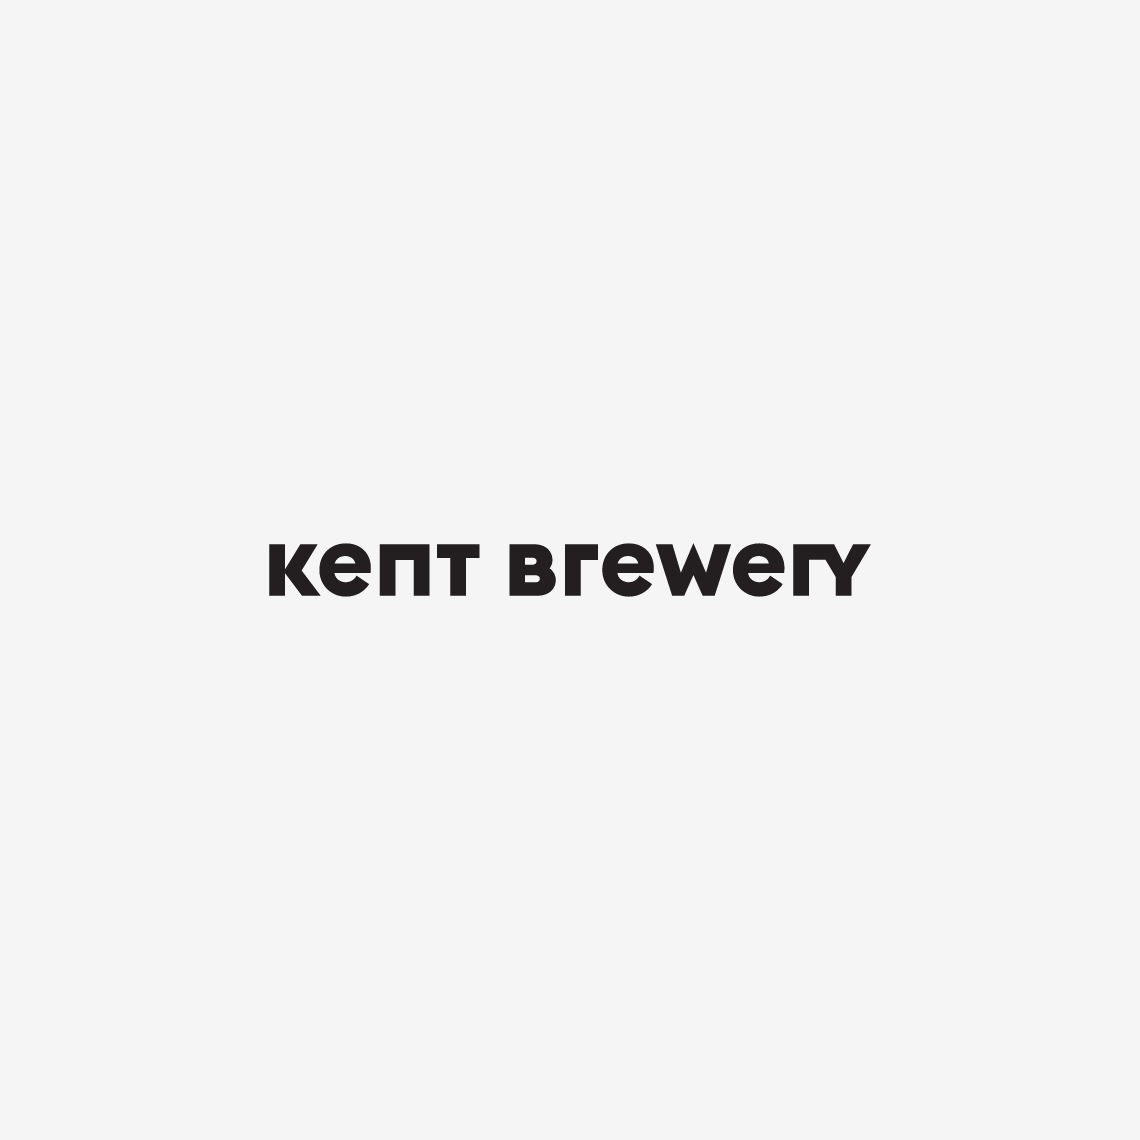 Logo-Kent Brewery